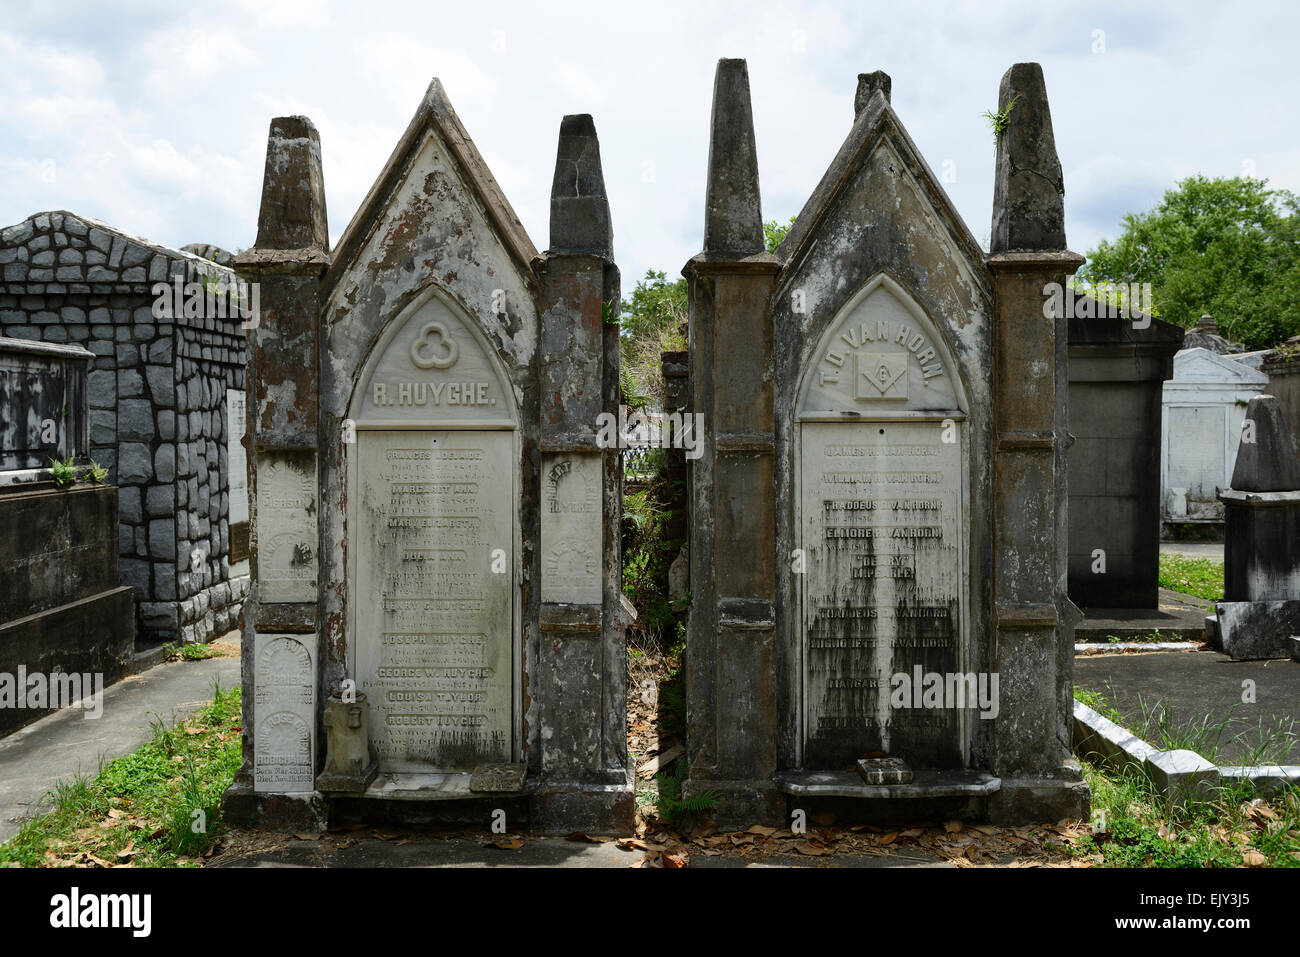 Huyghe van horn lafayette n° 1 tombe cimetière cimetière tombe morte de la Nouvelle-Orléans au-dessus du sol de la crypte funéraire des tombes catholiques RM USA Banque D'Images